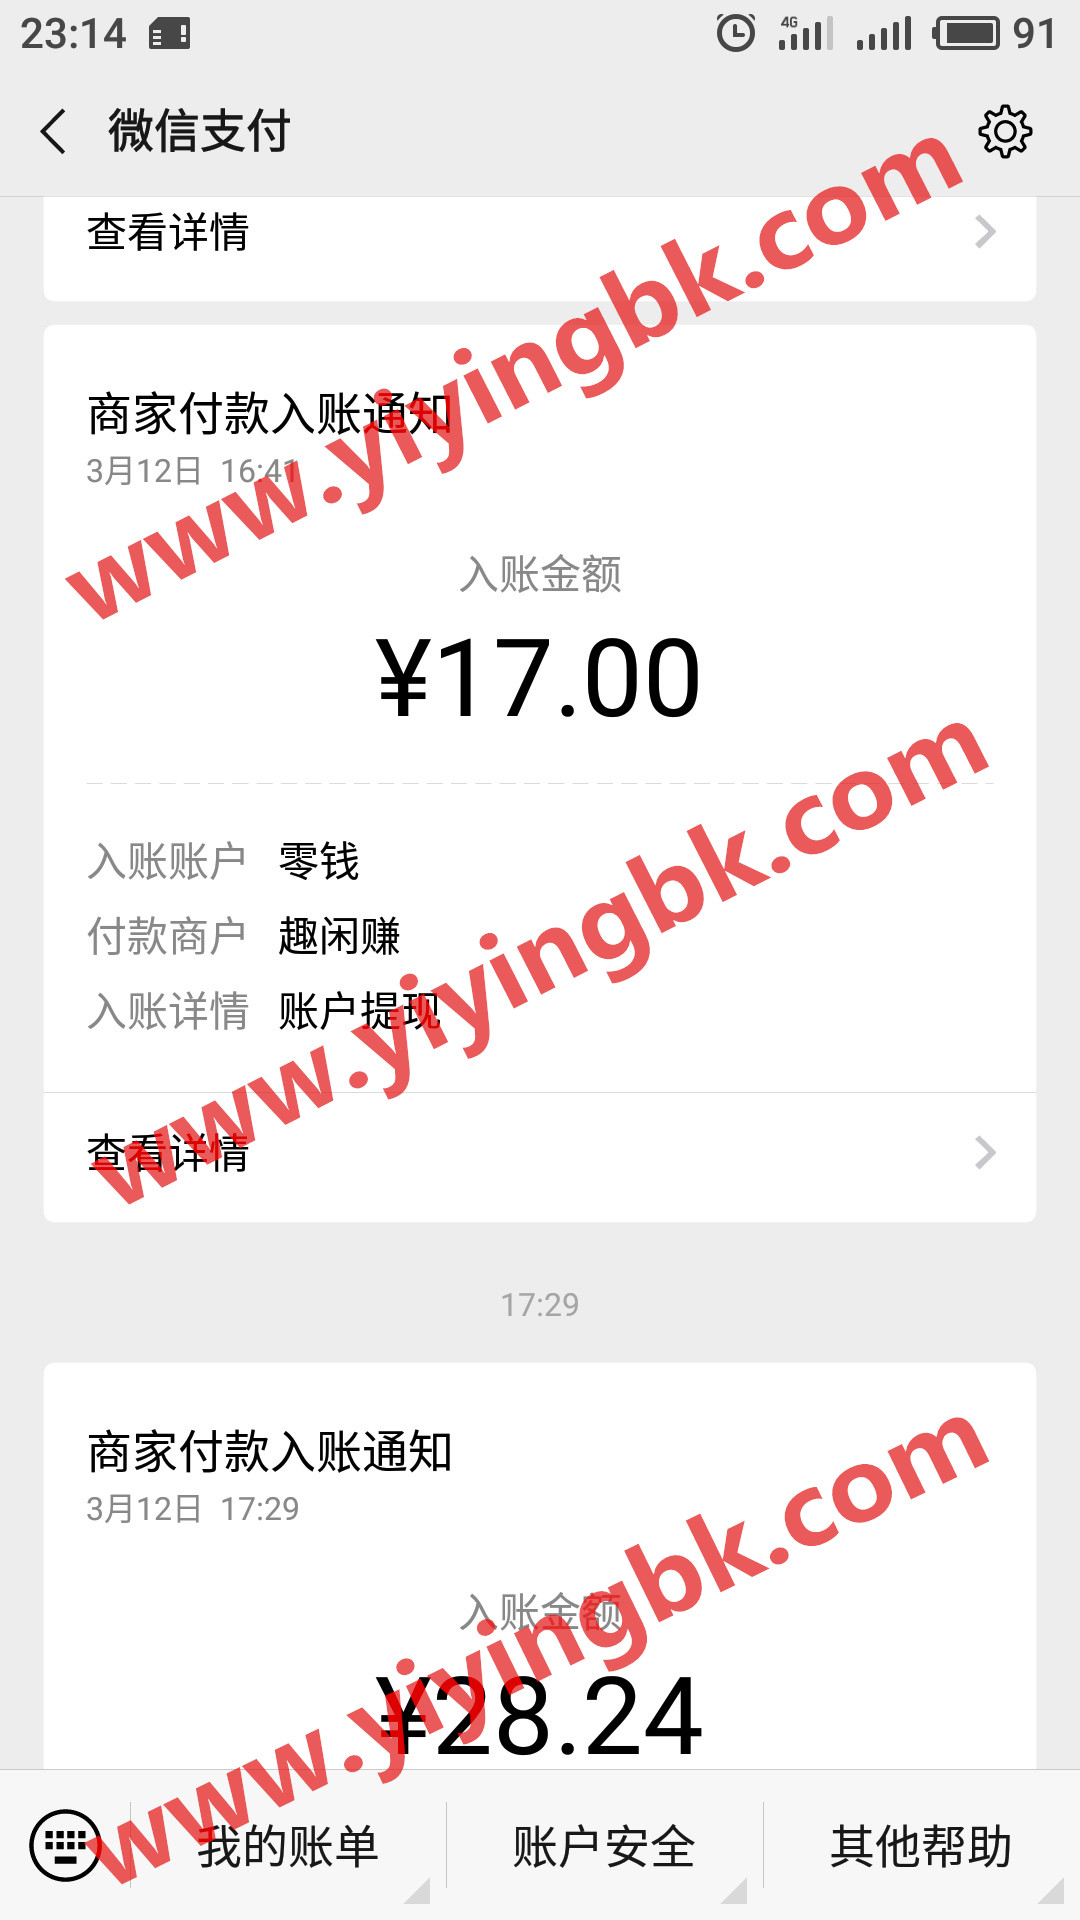 趣闲赚钱微信提现17元支付秒到账。www.yiyingbk.com